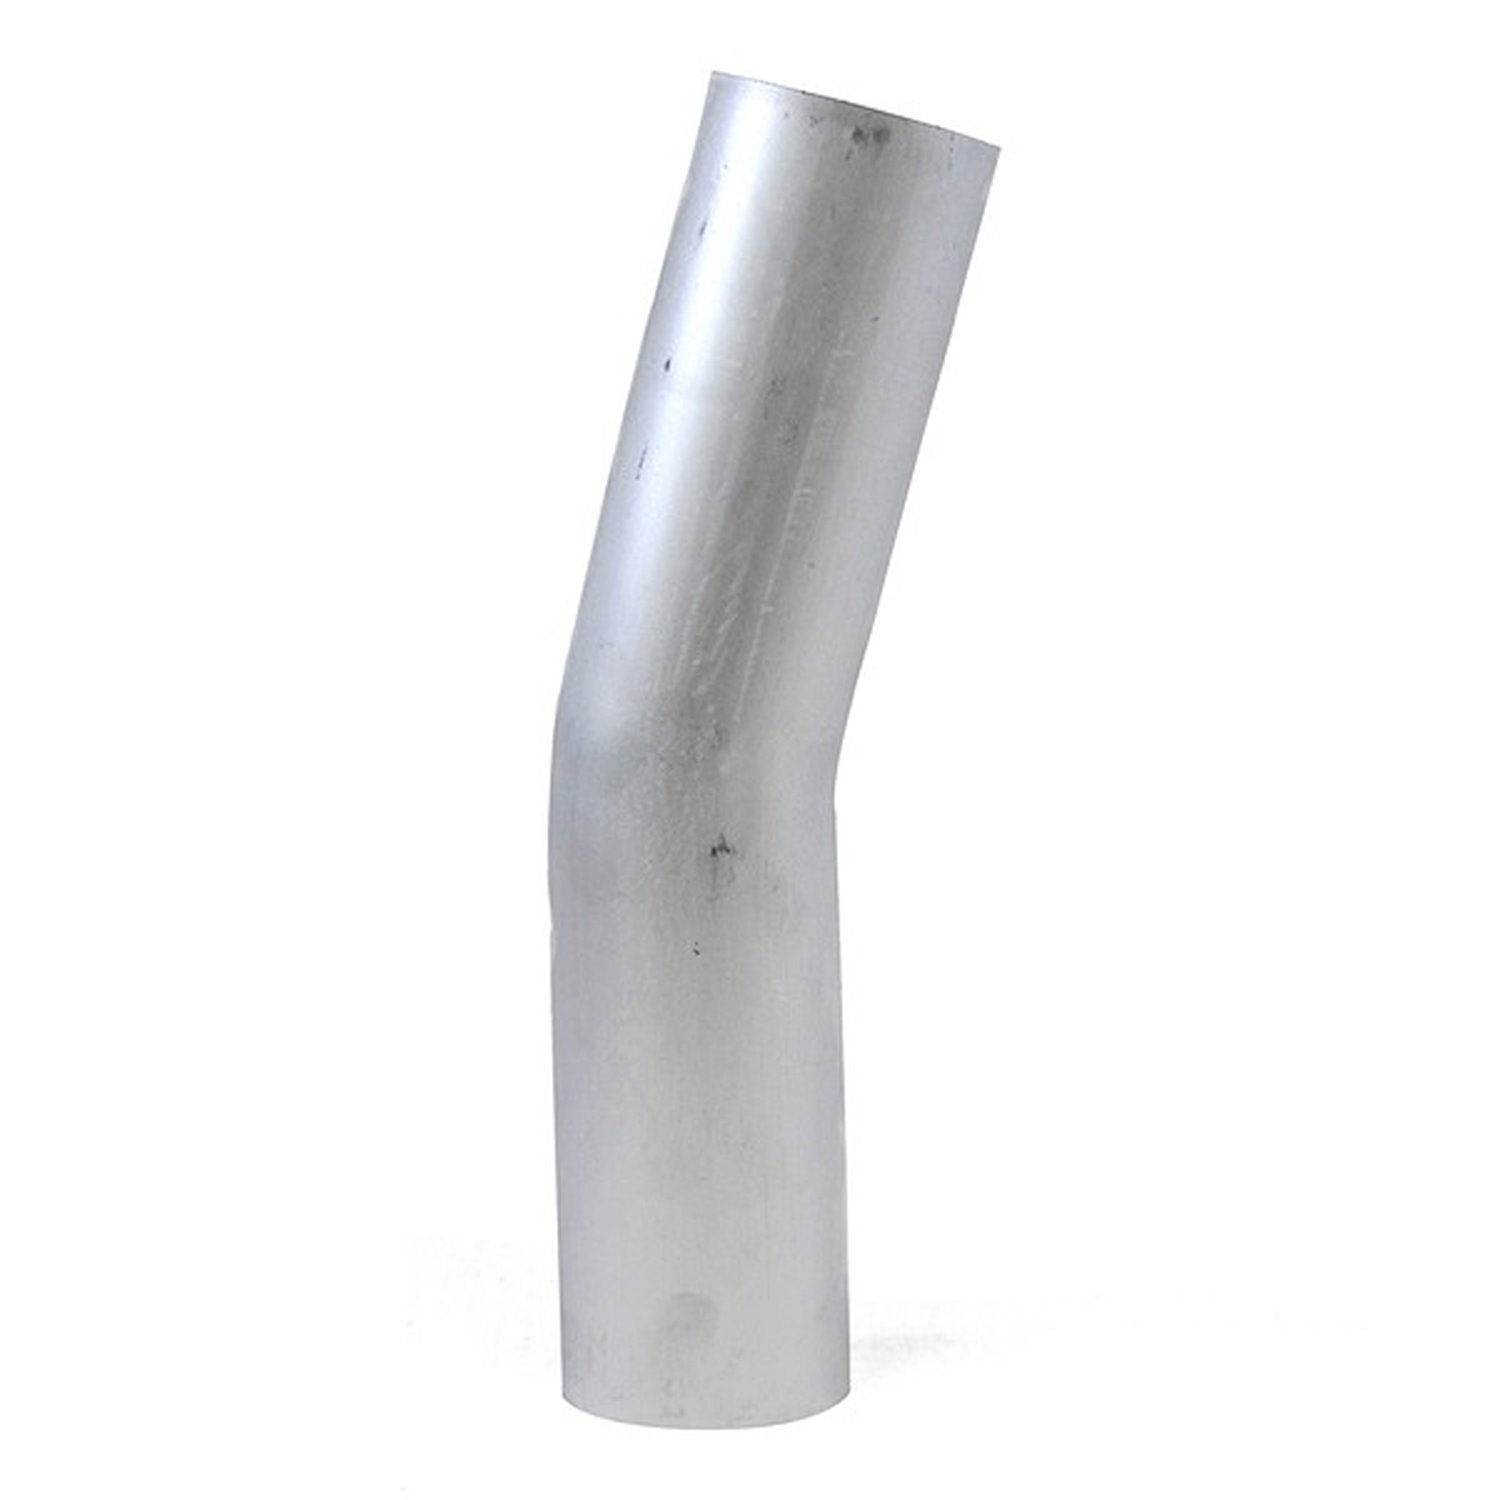 AT15-325-CLR-35 Aluminum Elbow Tube, 6061 Aluminum, 15-Degree Bend Elbow Tubing, 3-1/4 in. OD, Tight Radius, 3-1/2 in. CLR